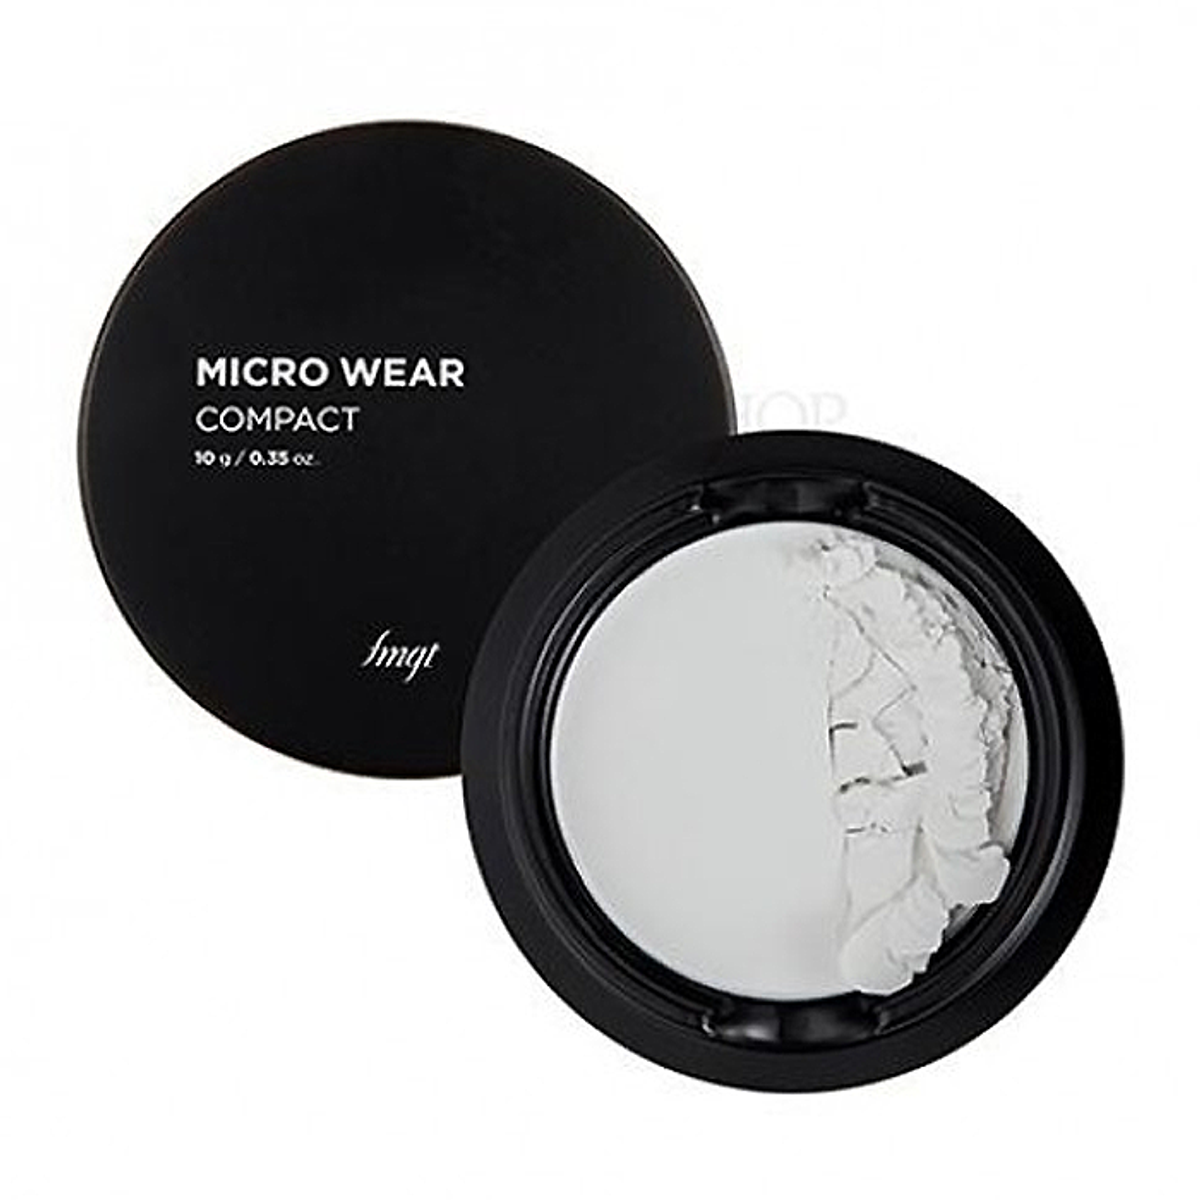 fmgt-phan-phu-dang-nen-thefaceshop-micro-wear-powder-10g-3